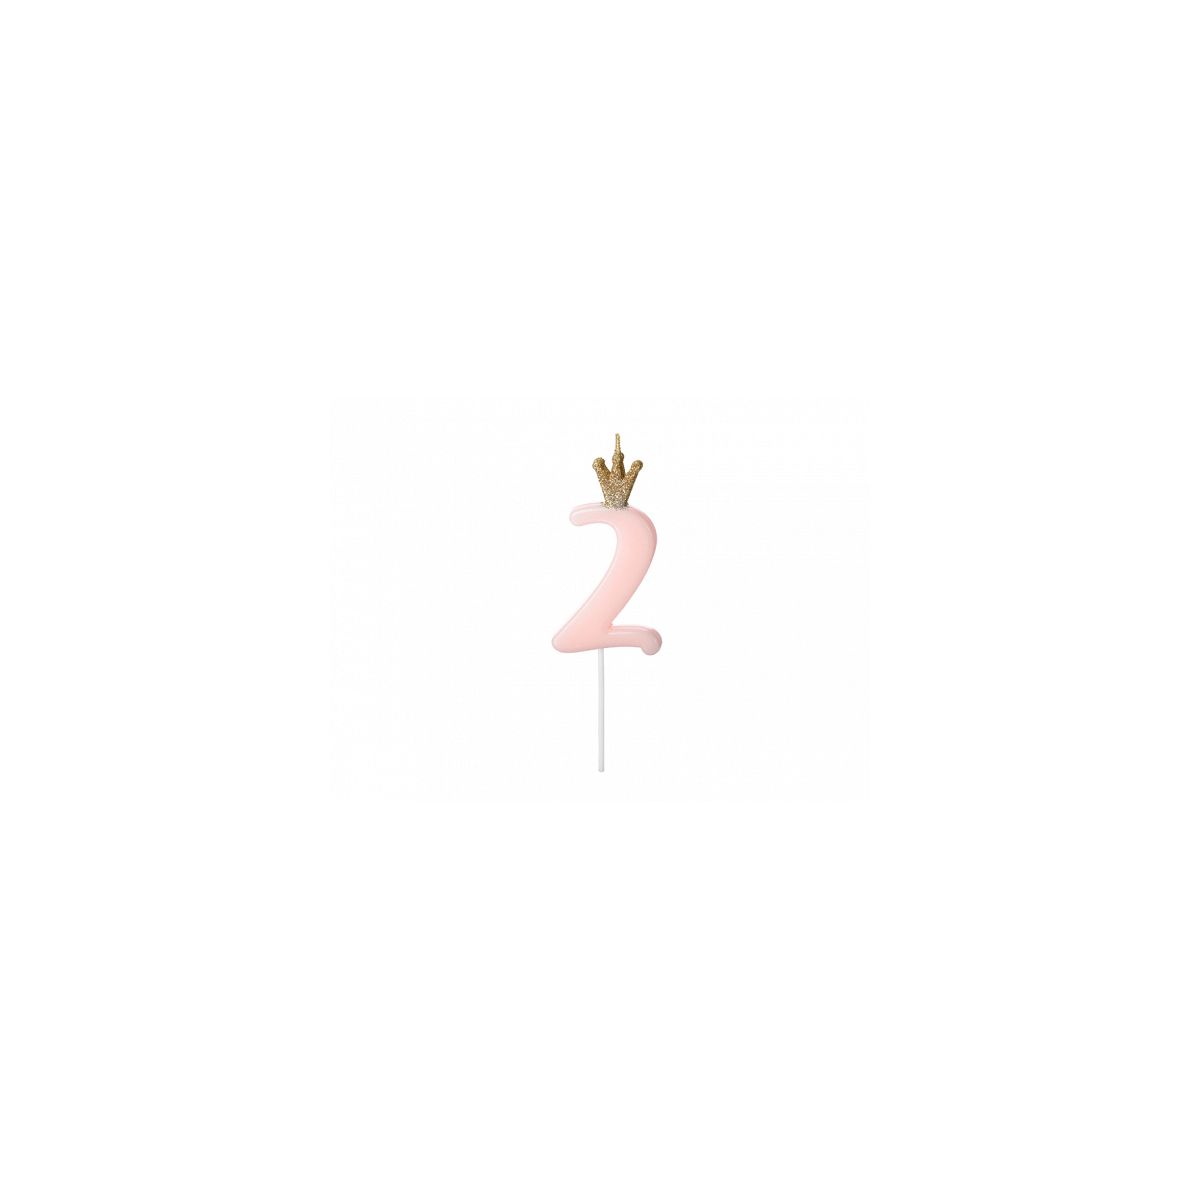 Świeczka urodzinowa Cyferka 2, jasny różowy, 9.5cm Partydeco (SCU6-2-081J)